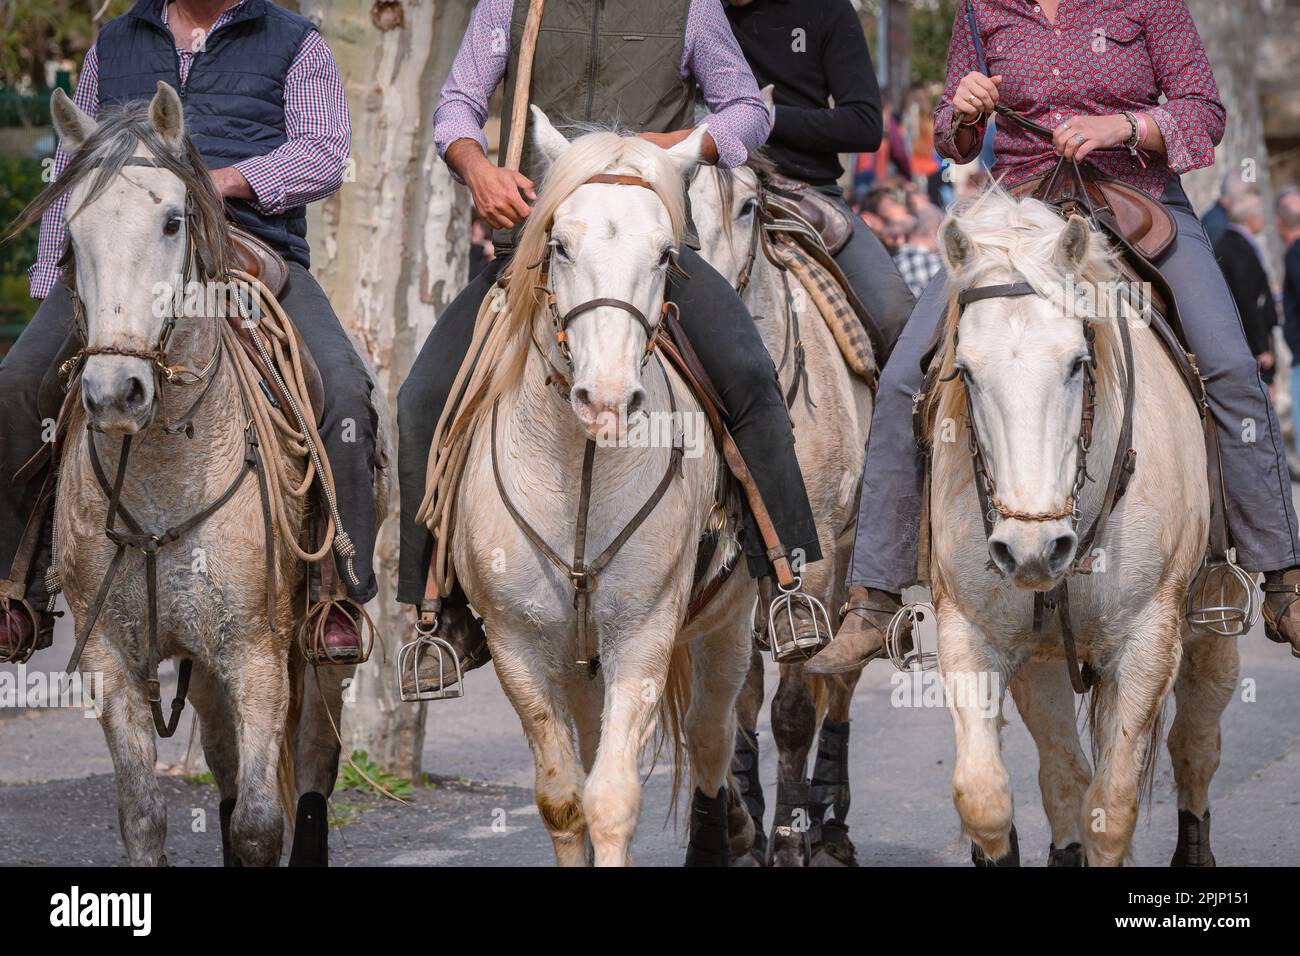 Bandido und Abrivado in einer Dorfstraße im Süden Frankreichs. Camargue-Bulle läuft frei in einer Straße. Stierkampf-Tradition. Stockfoto